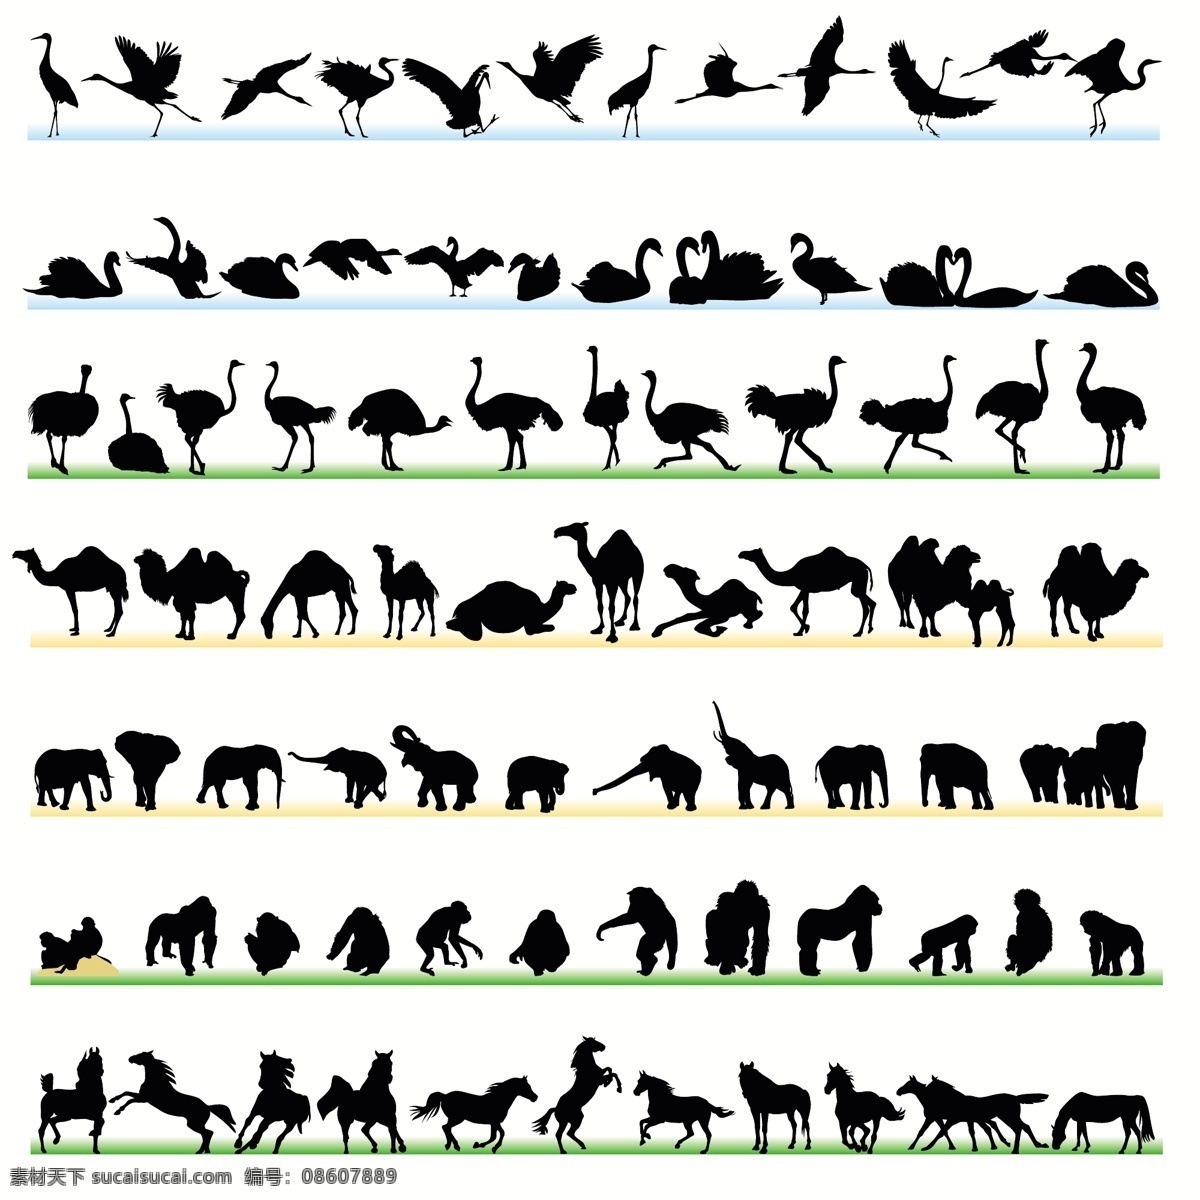 各种动物剪影 各种 动物 剪影 家禽 野兽 形状 图标 矢量素材 其他矢量 矢量